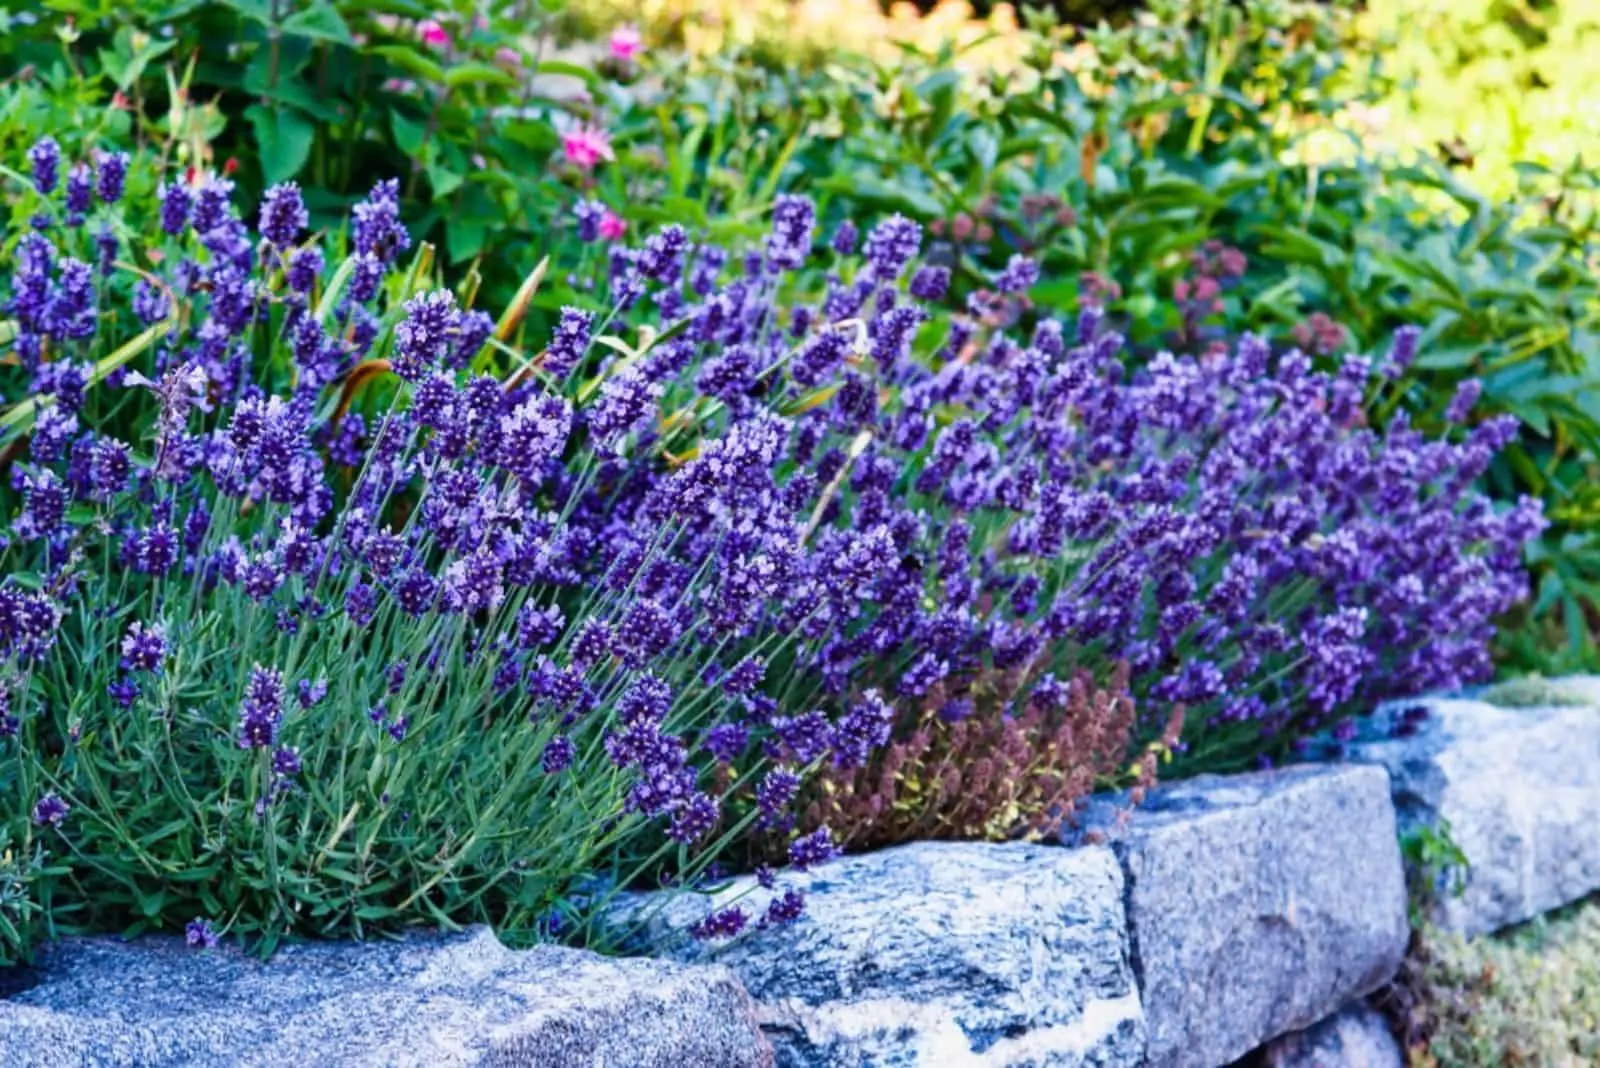 Violet lavender abundant blossom in a garden.